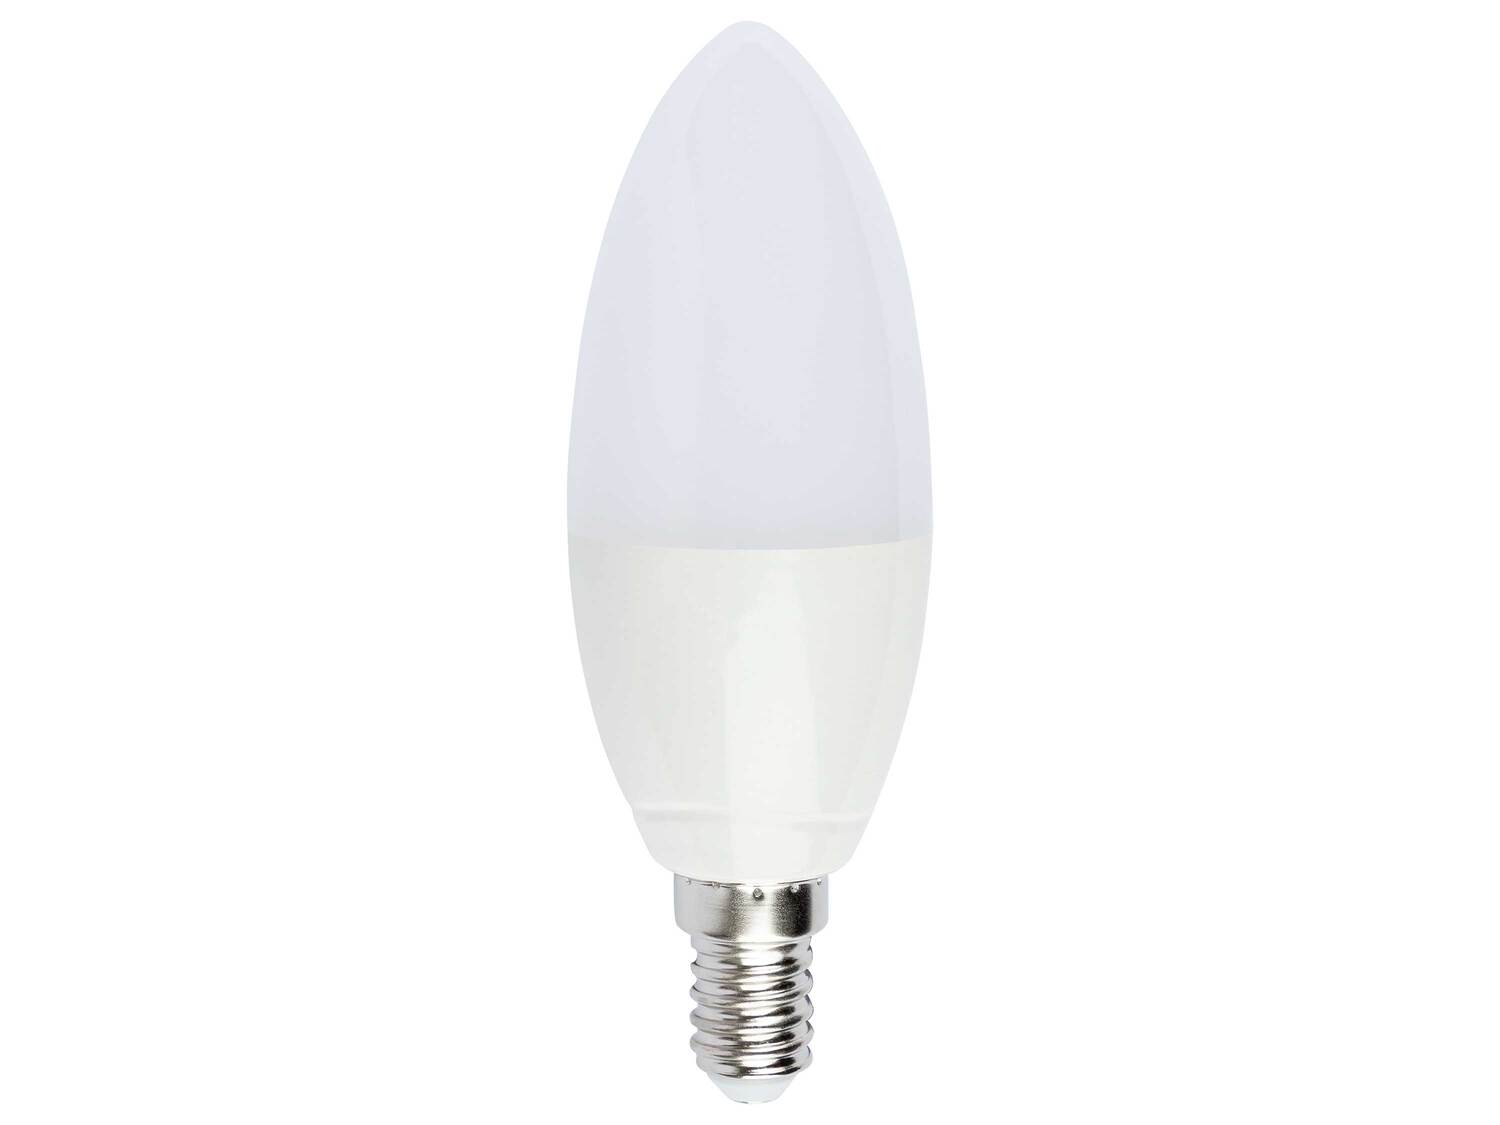 Ampoule LED RGB connectée , le prix 9.99 € 
- E27
- 9 W
- 806 lm
- Commande ...